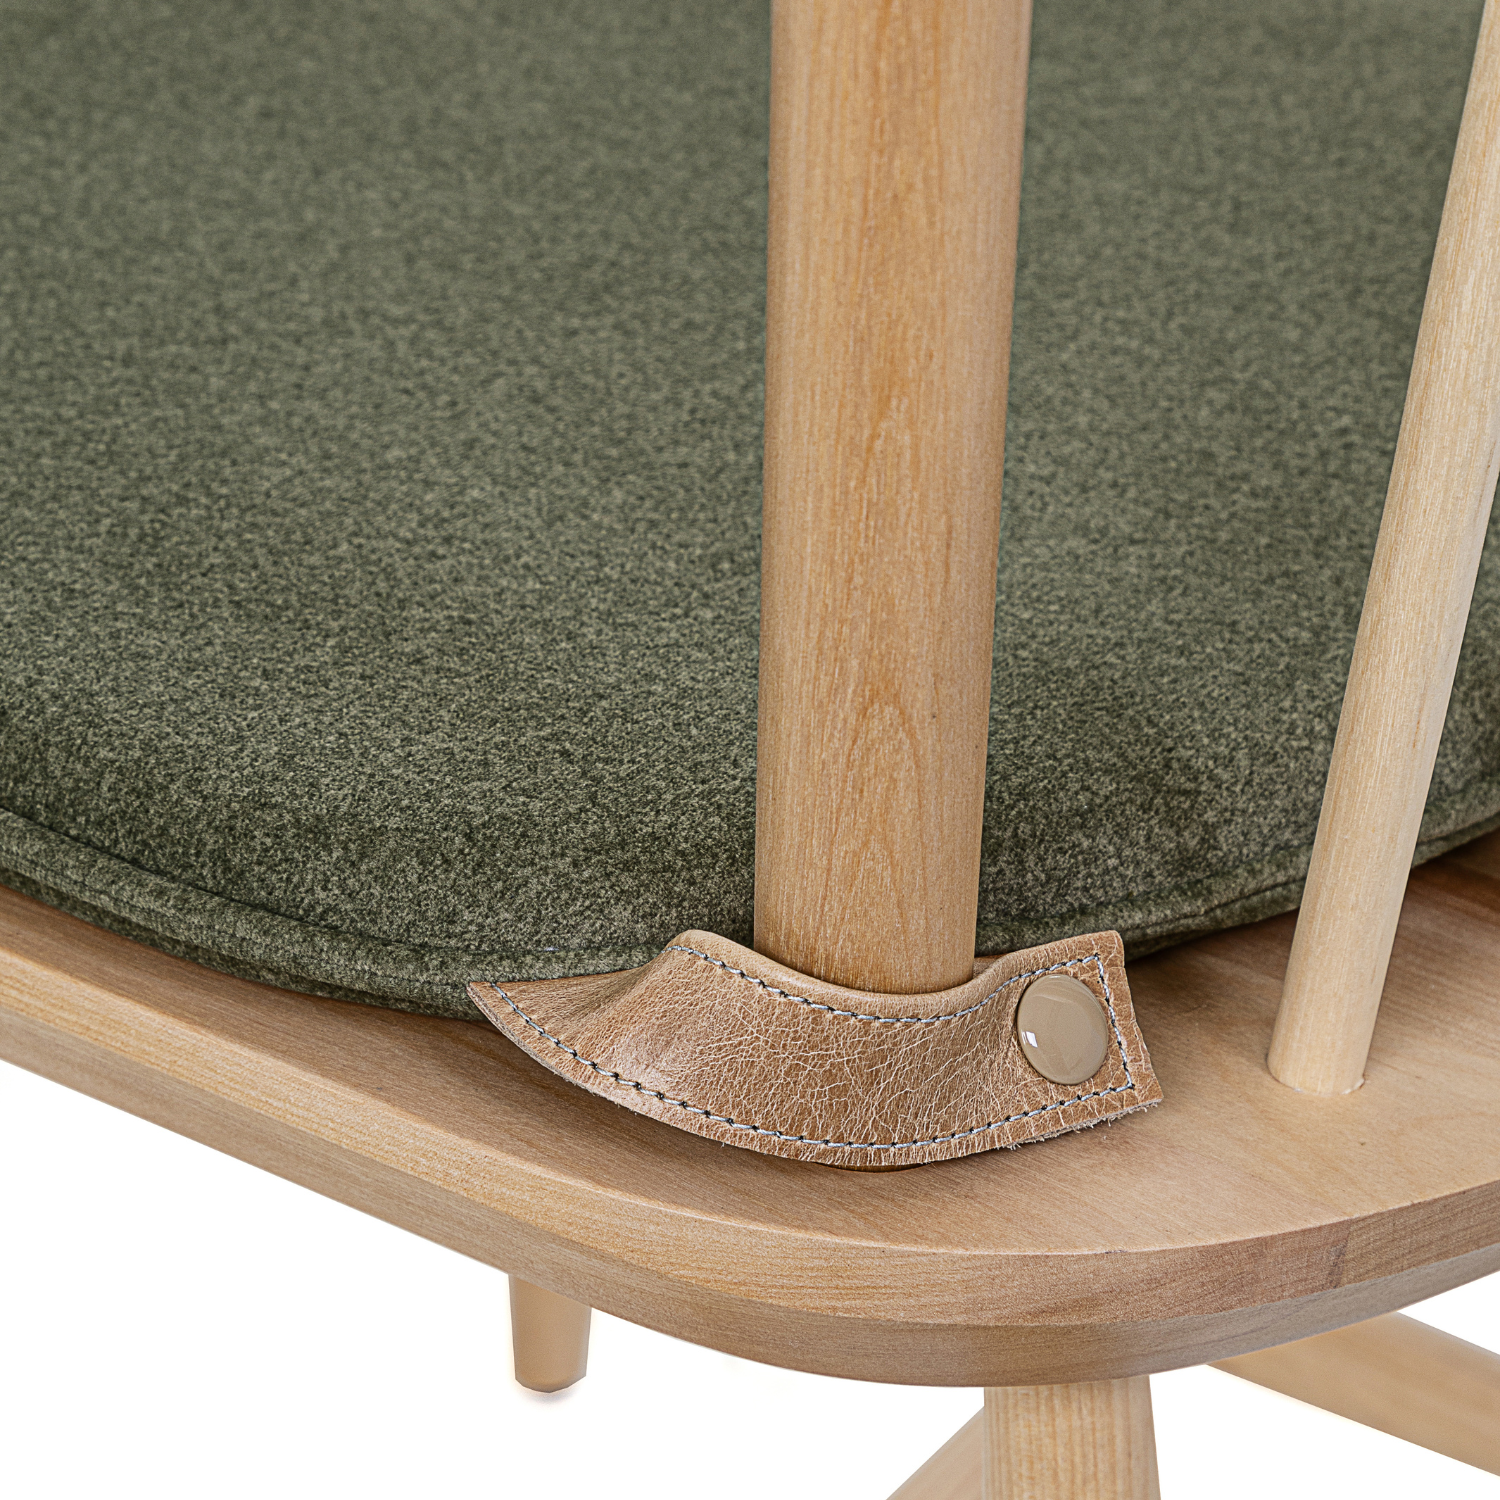 Olive chair cushion